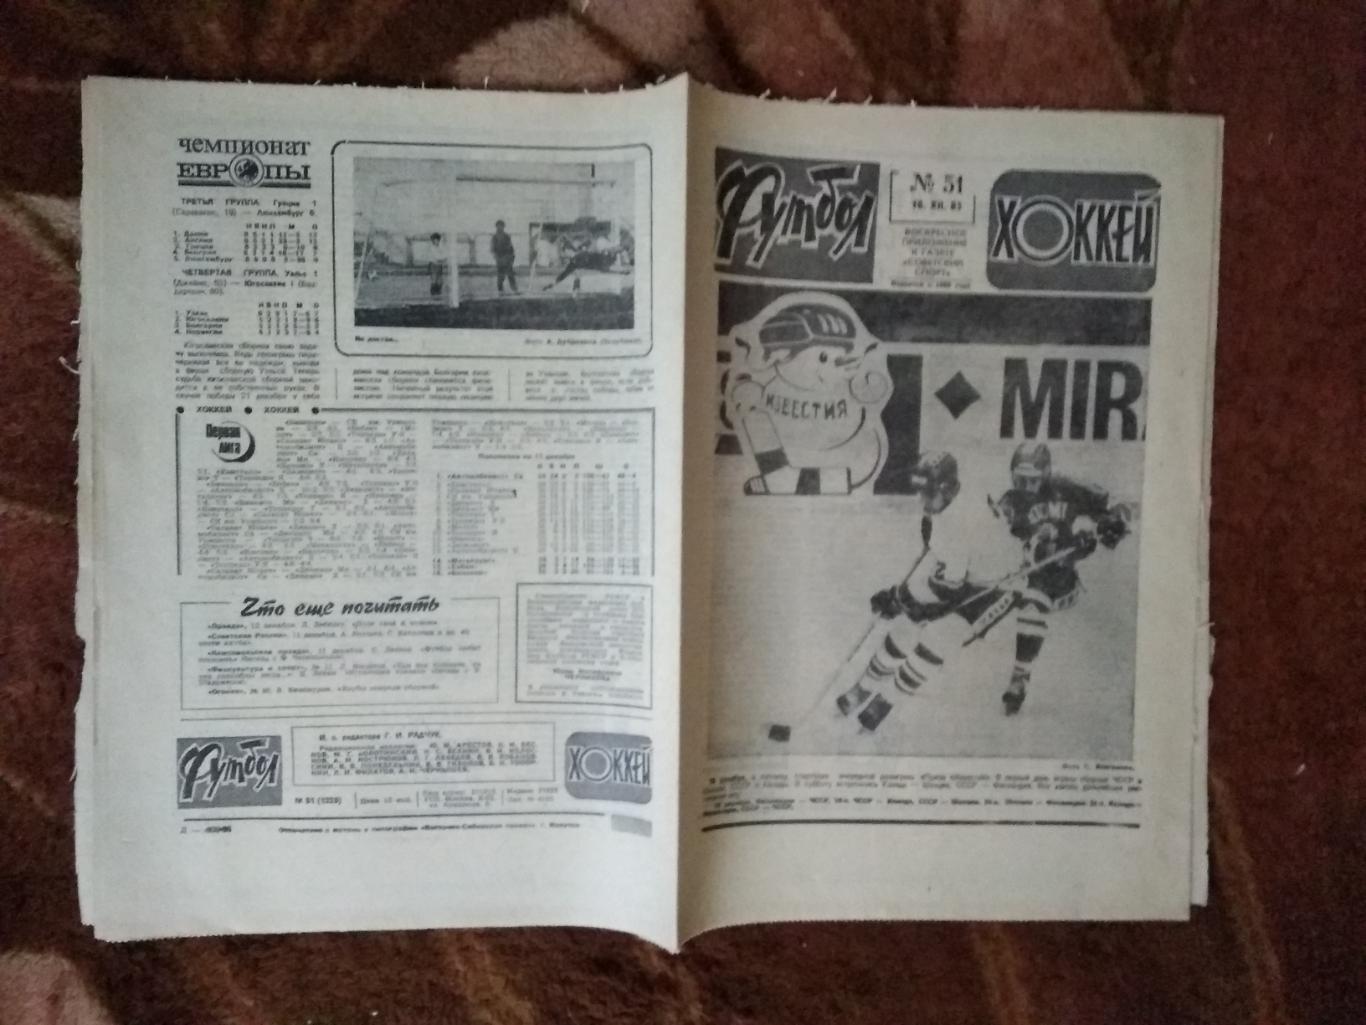 Футбол-Хоккей № 51 1983 г. (Приз Известий).